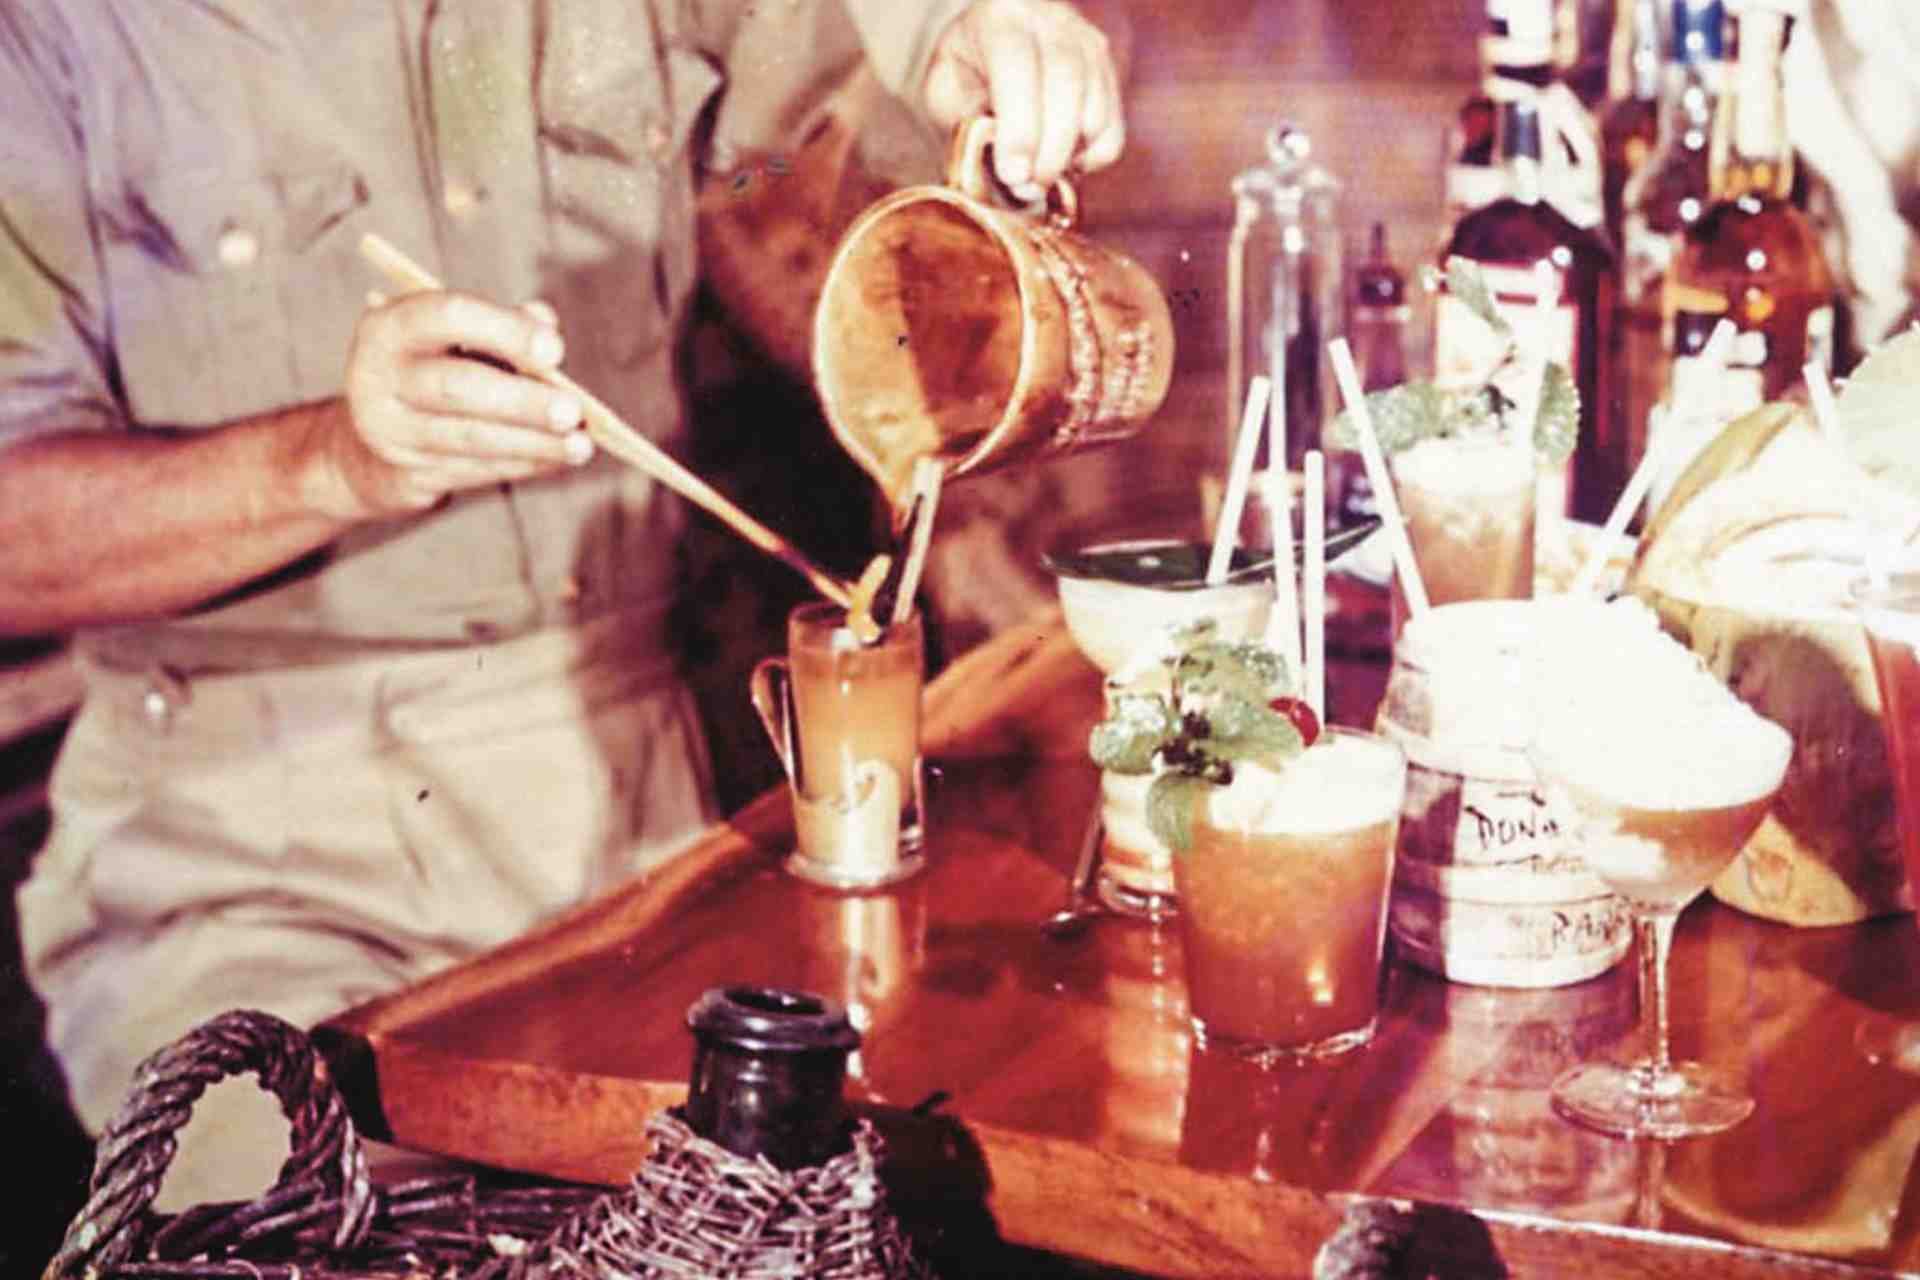 Um Tiki-Drinks massentauglich zu machen, wurde schlechter Alkohol mit der Süße aus Säften und Sirupen überdeckt. Damit ist jetzt Schluss.